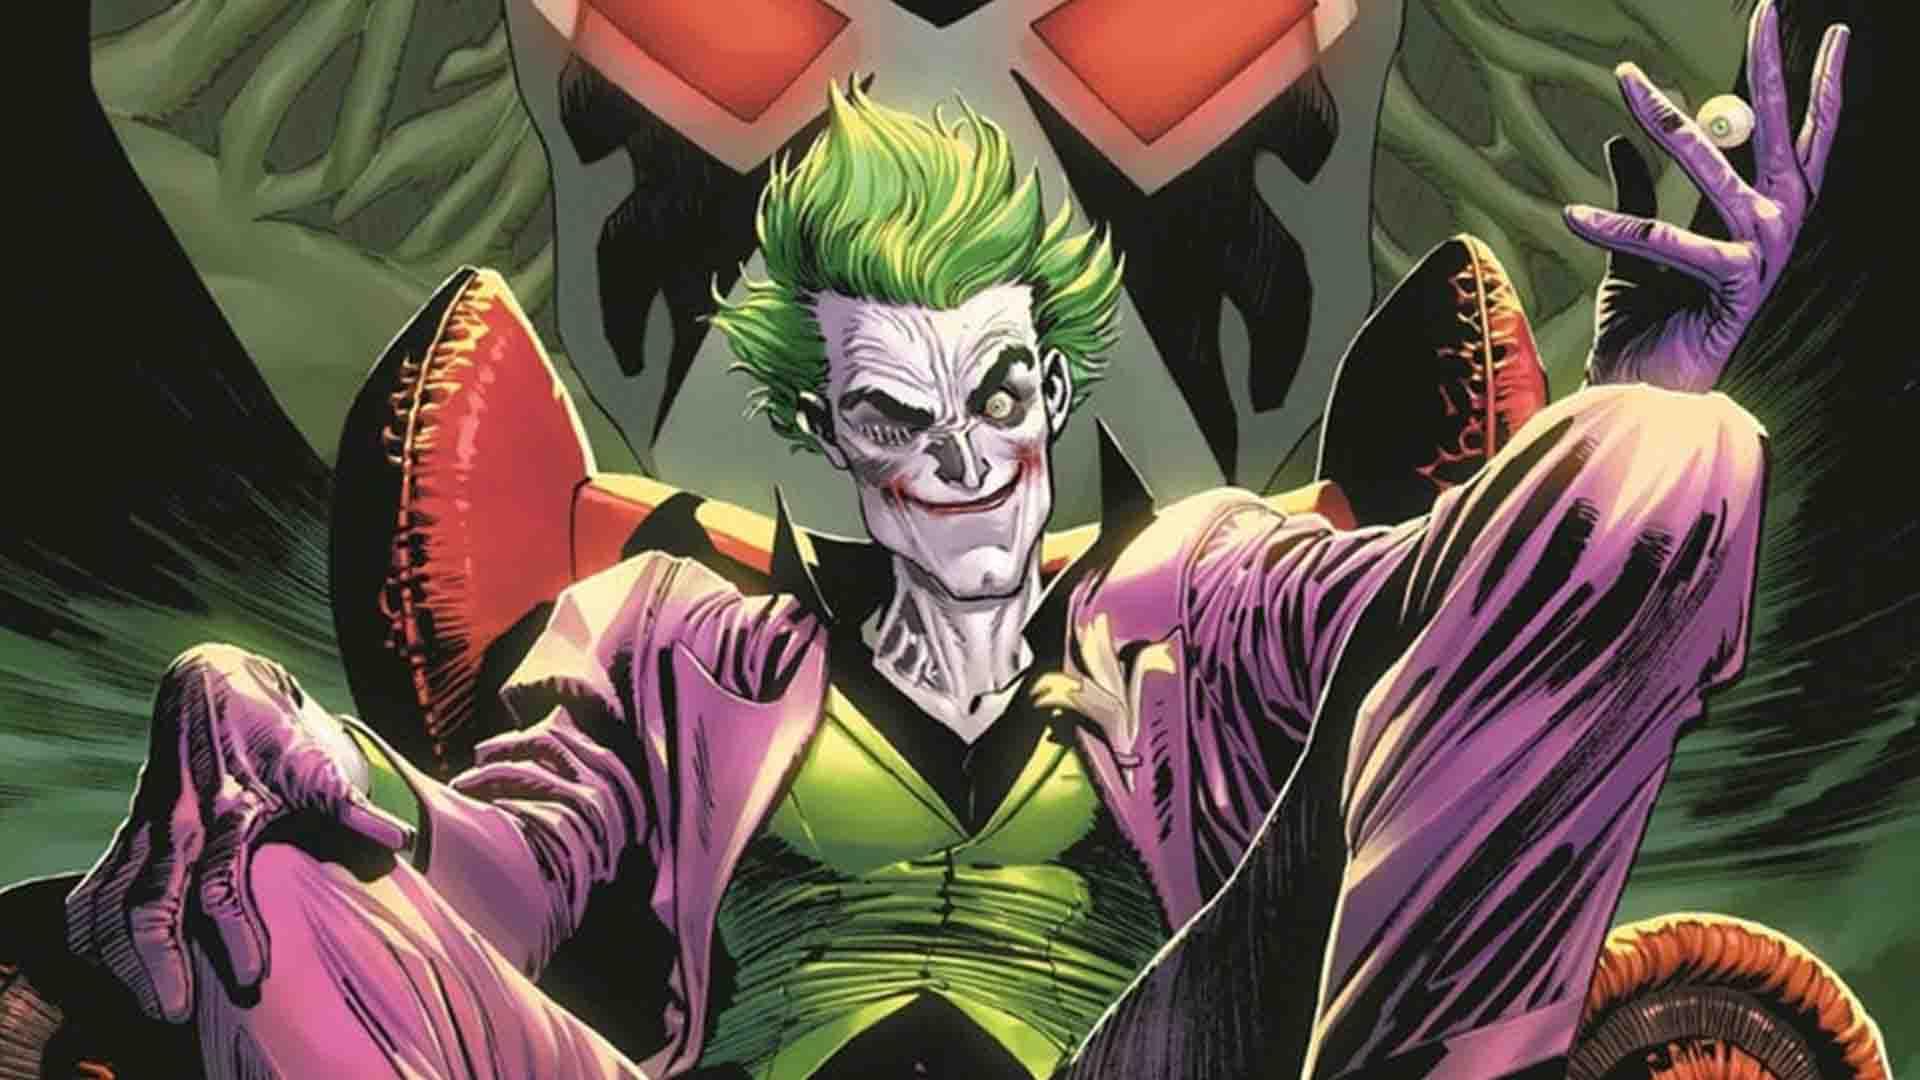 دی سی سری کتاب کمیک جدید The Joker را معرفی کرد